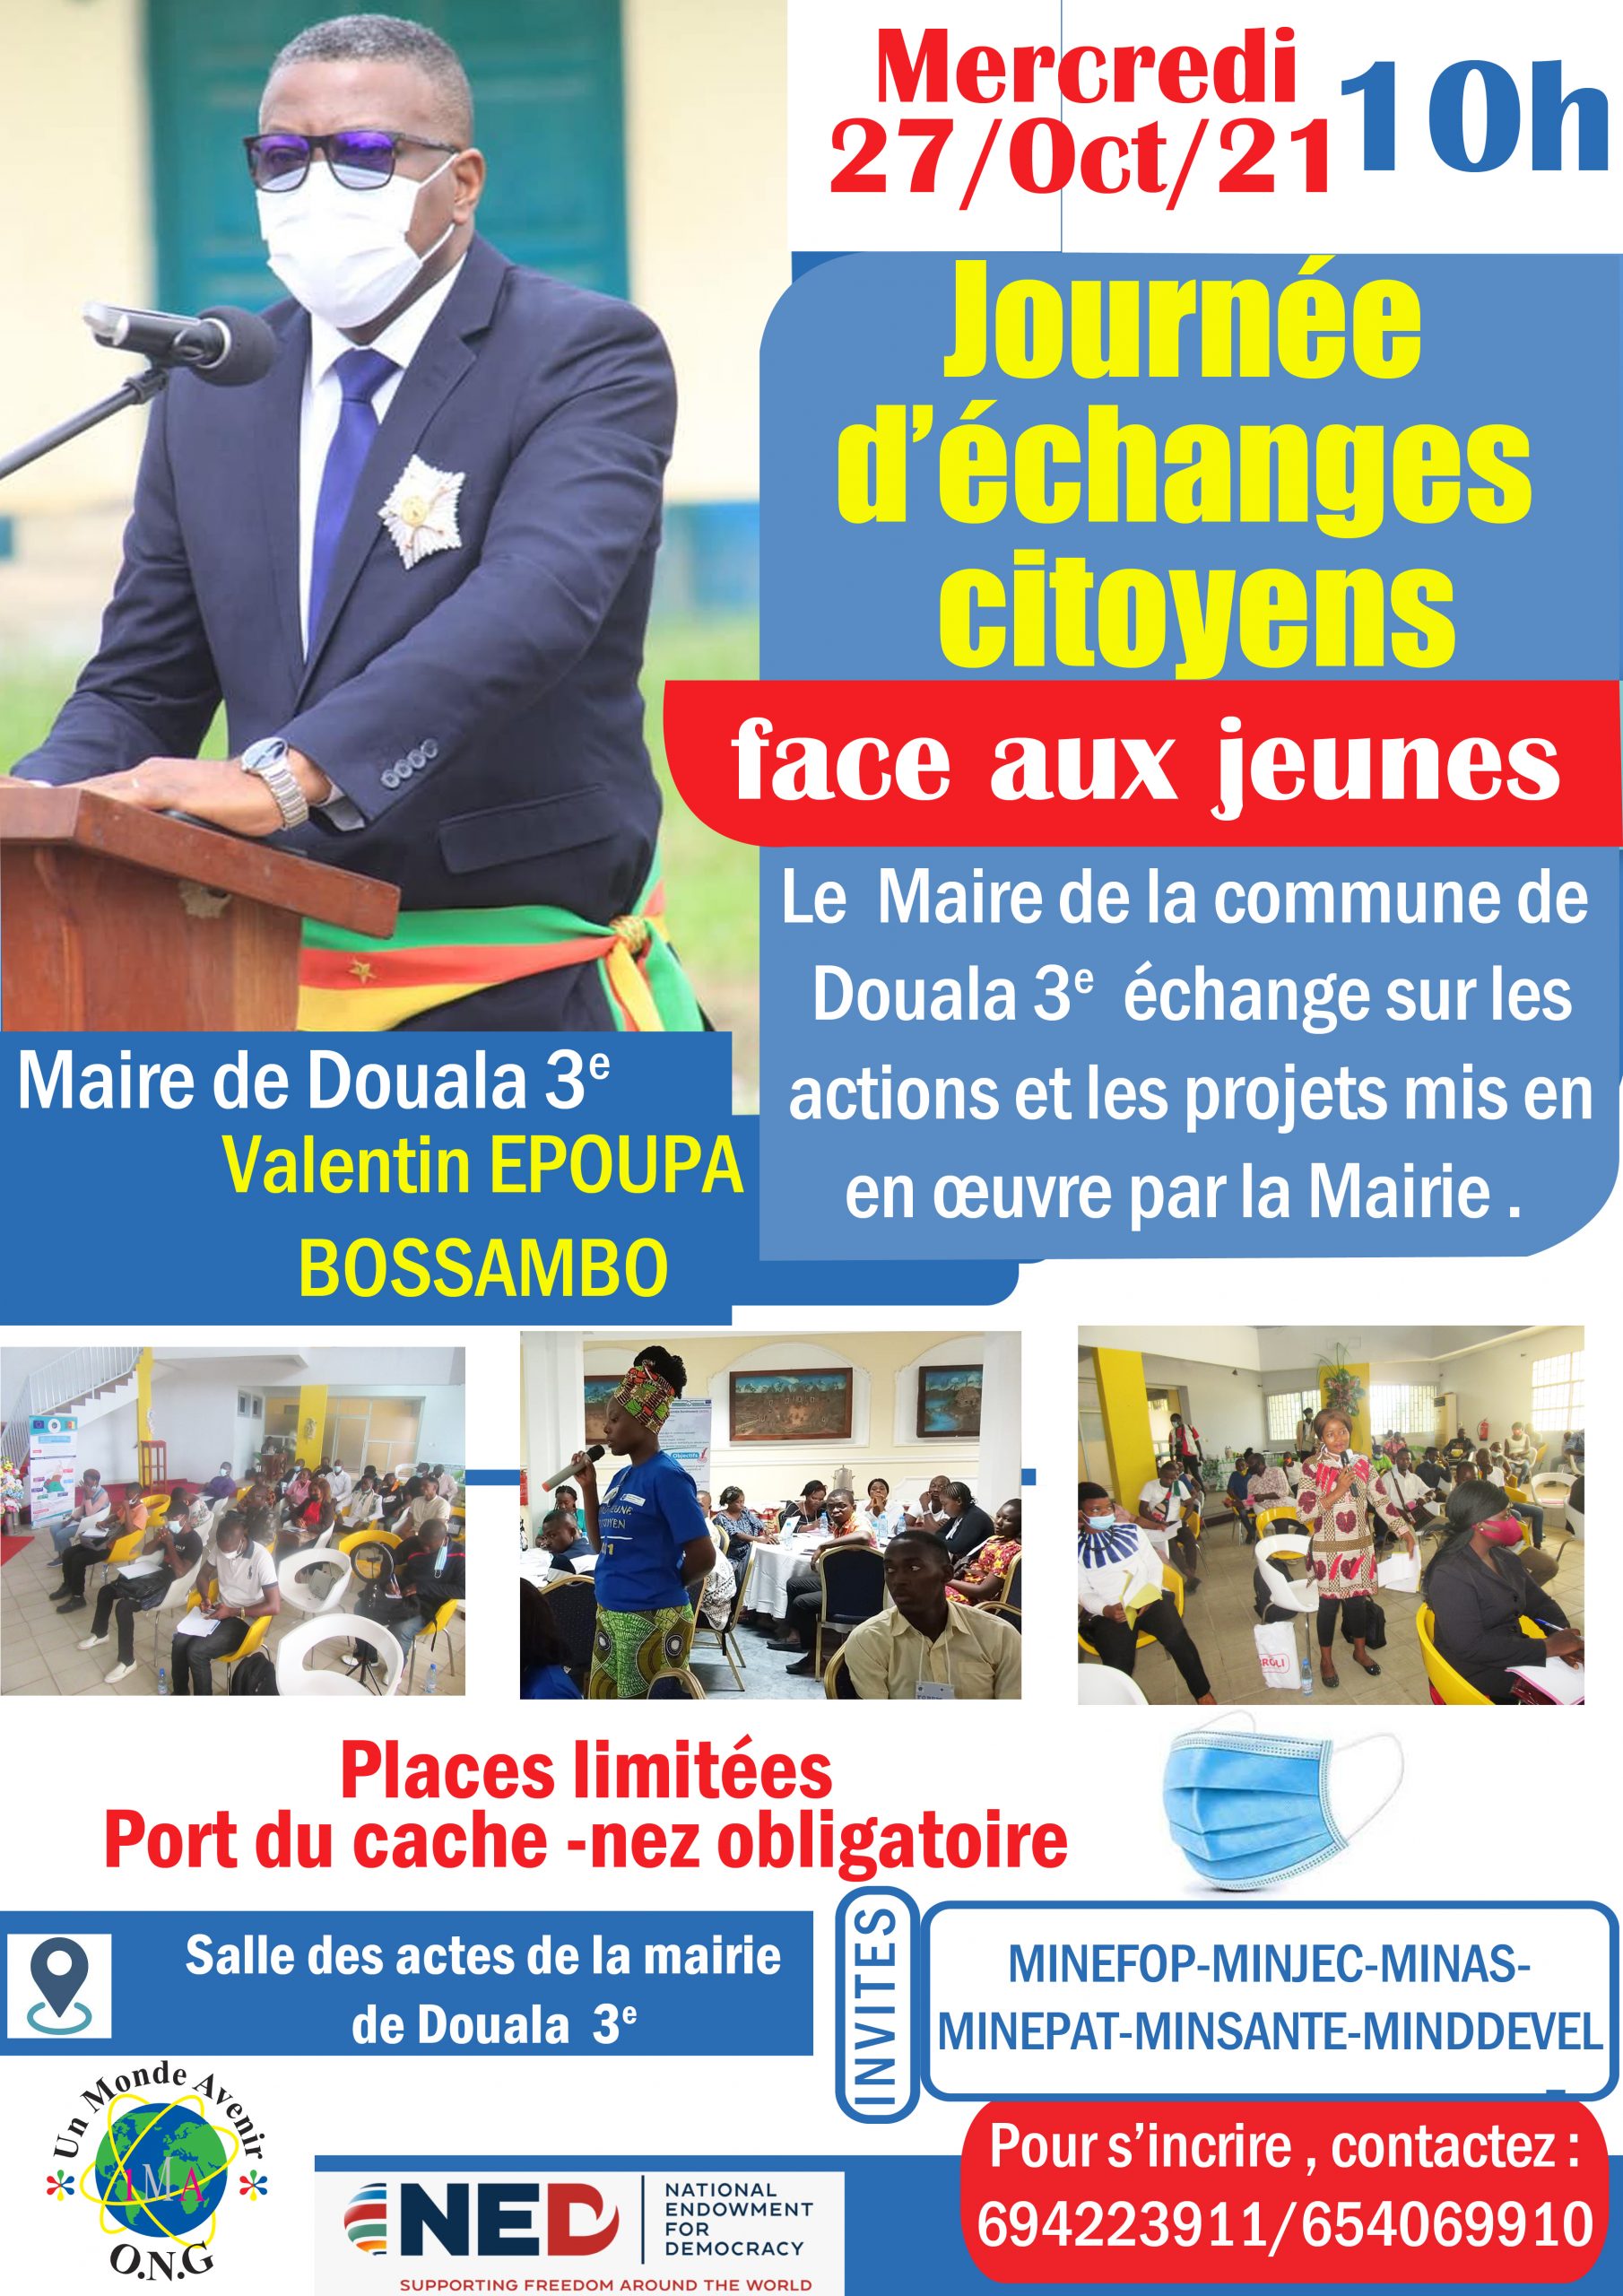 Journée d’Echange Citoyen (le maire de Douala 3eme face aux jeunes de sa localité)